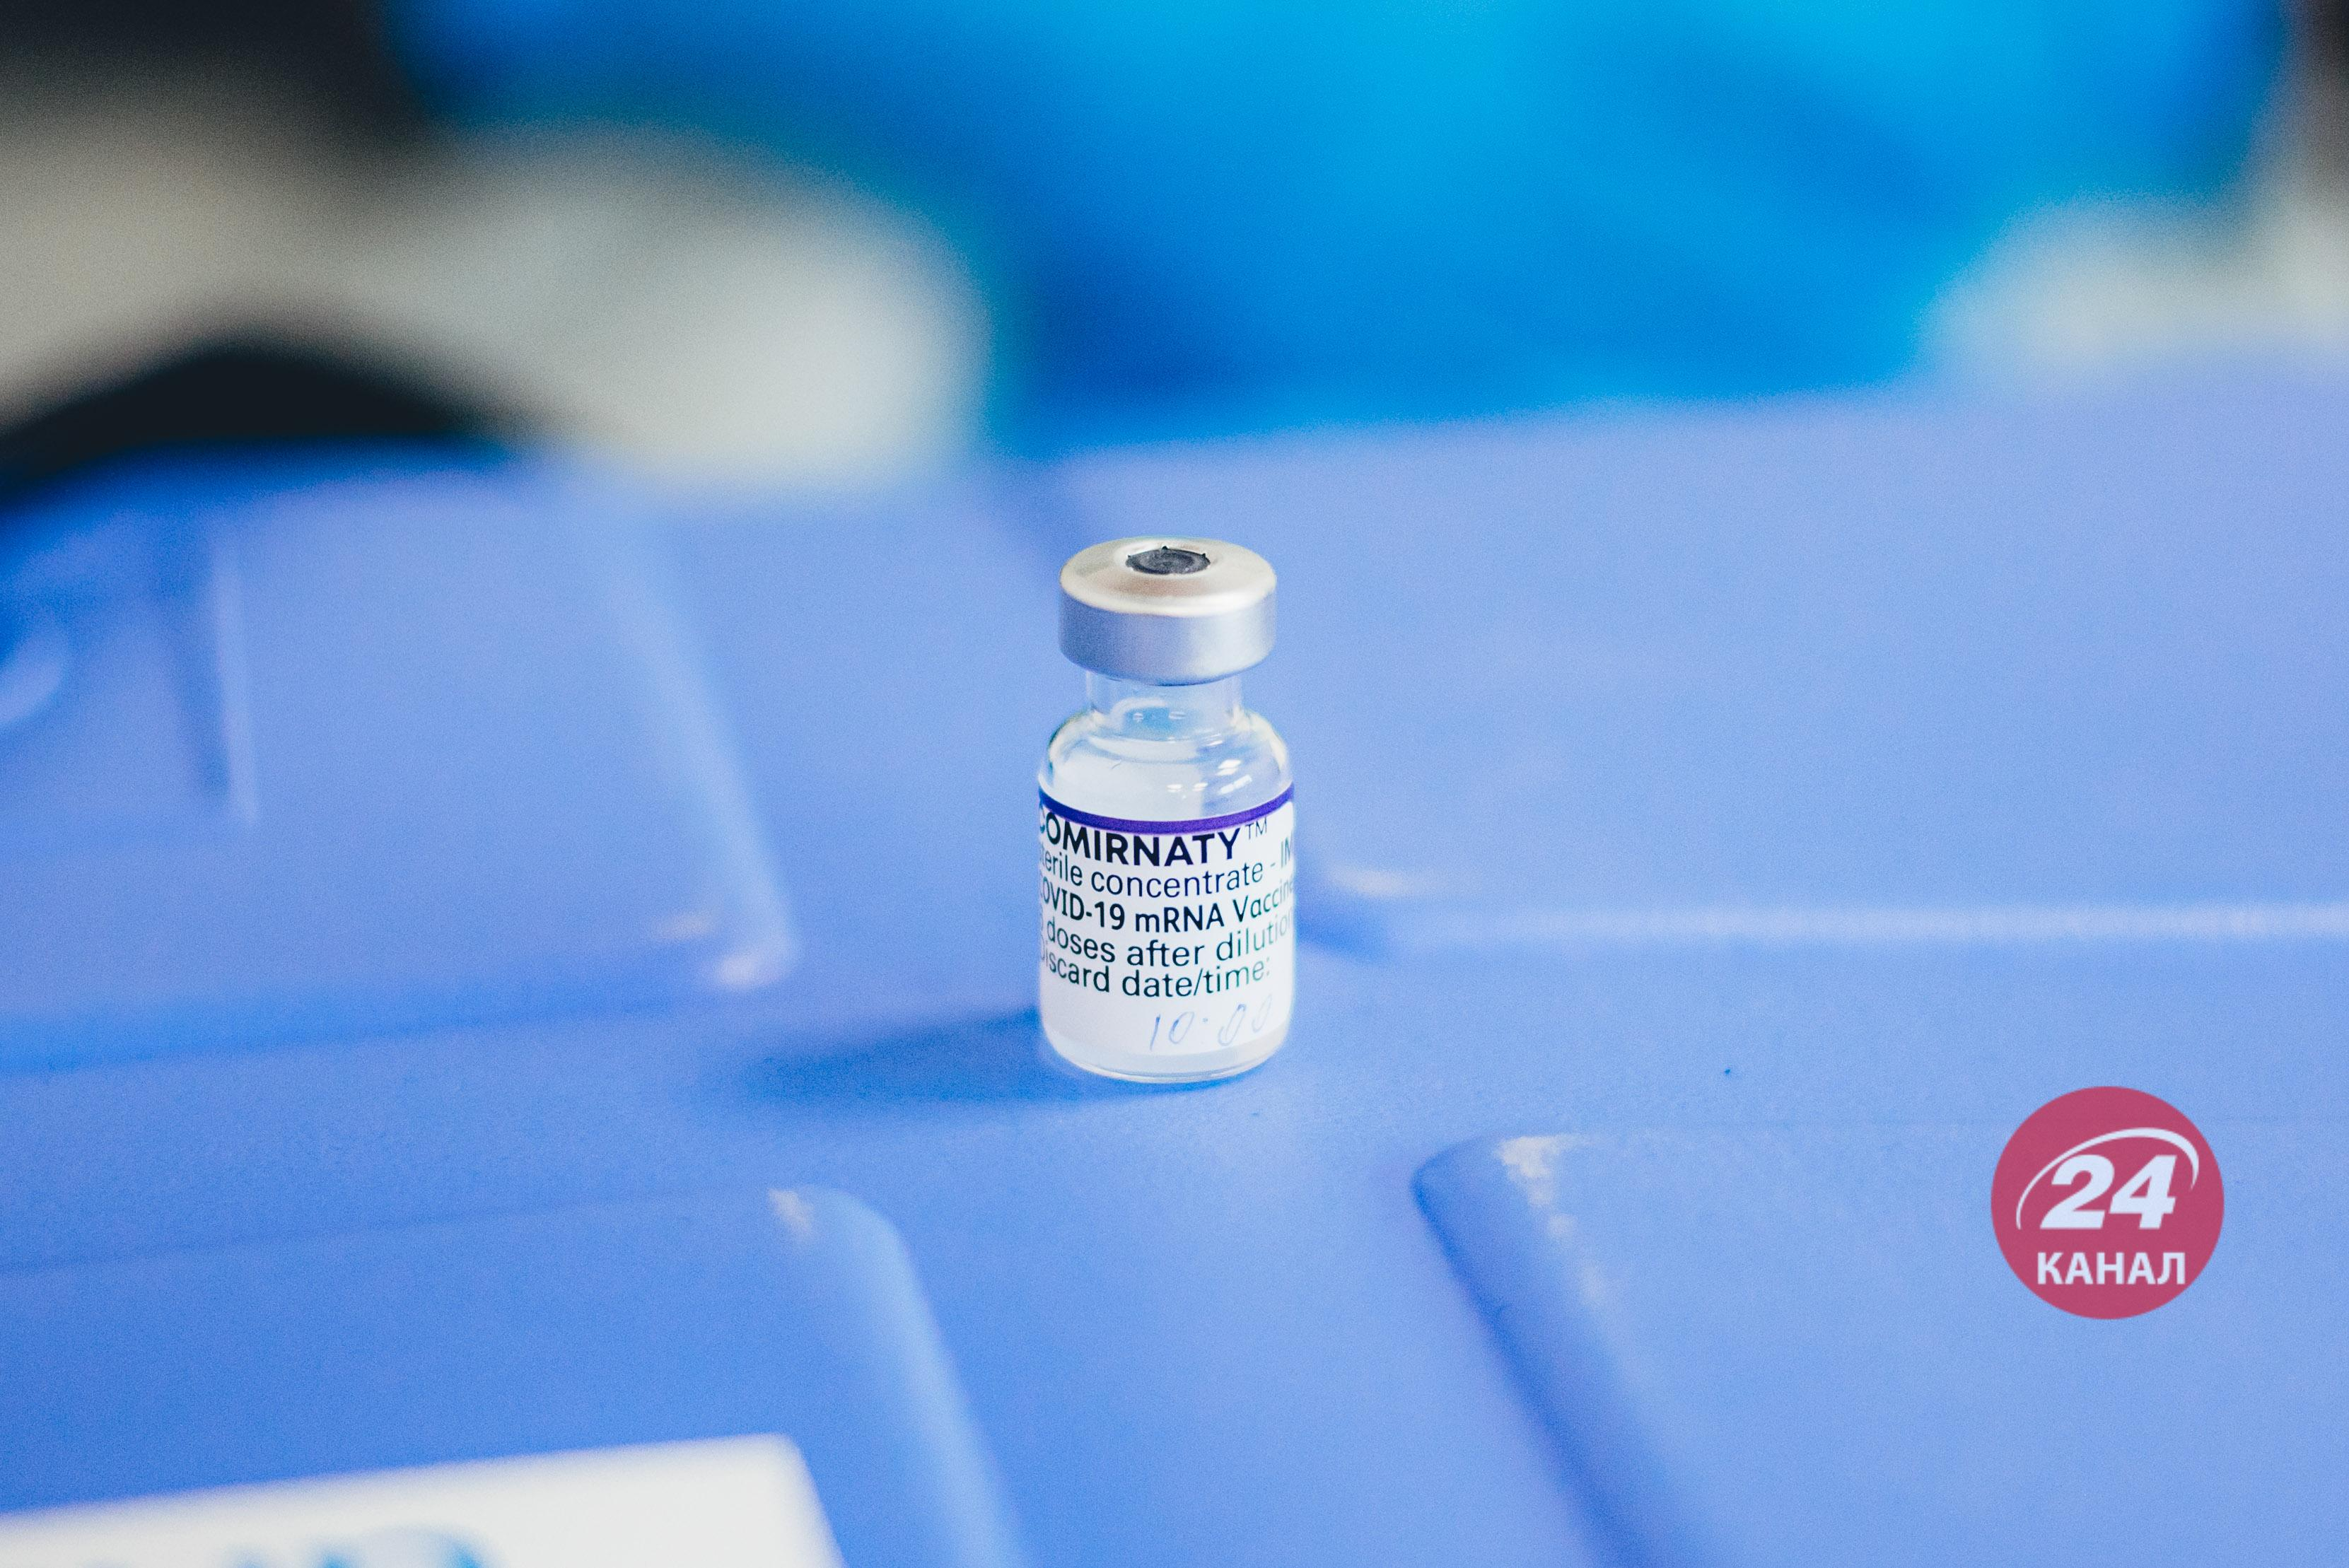 Ежегодную прививку вместо частых ревакцинаций предлагают в Pfizer